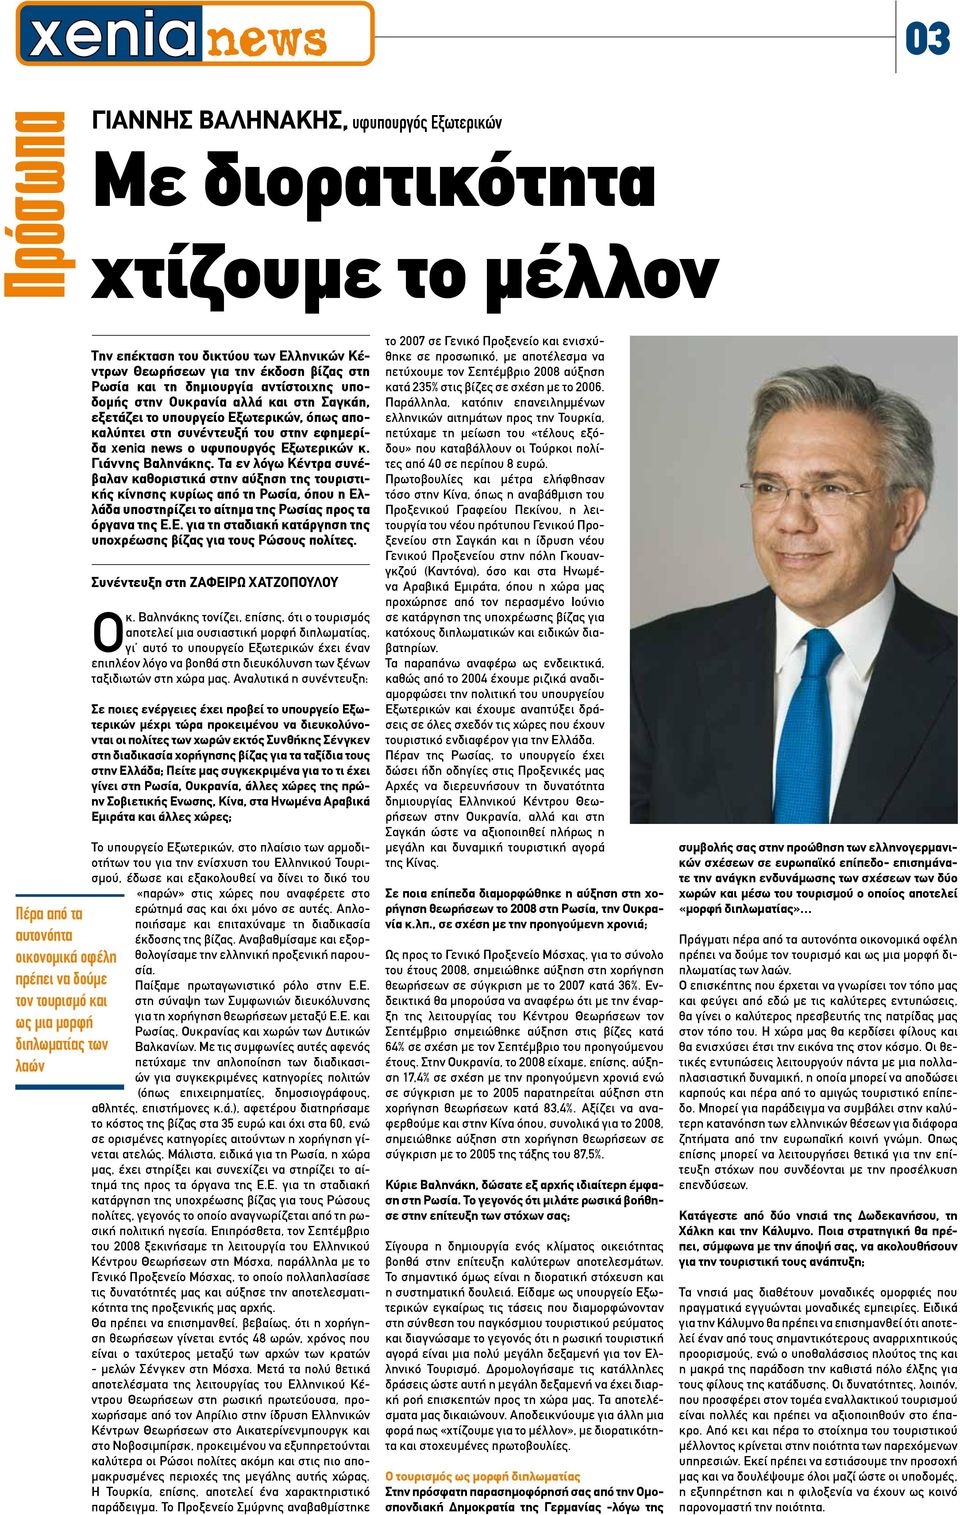 αποκαλύπτει στη συνέντευξή του στην εφημερίδα xenia news ο υφυπουργός Εξωτερικών κ. Γιάννης Βαληνάκης.